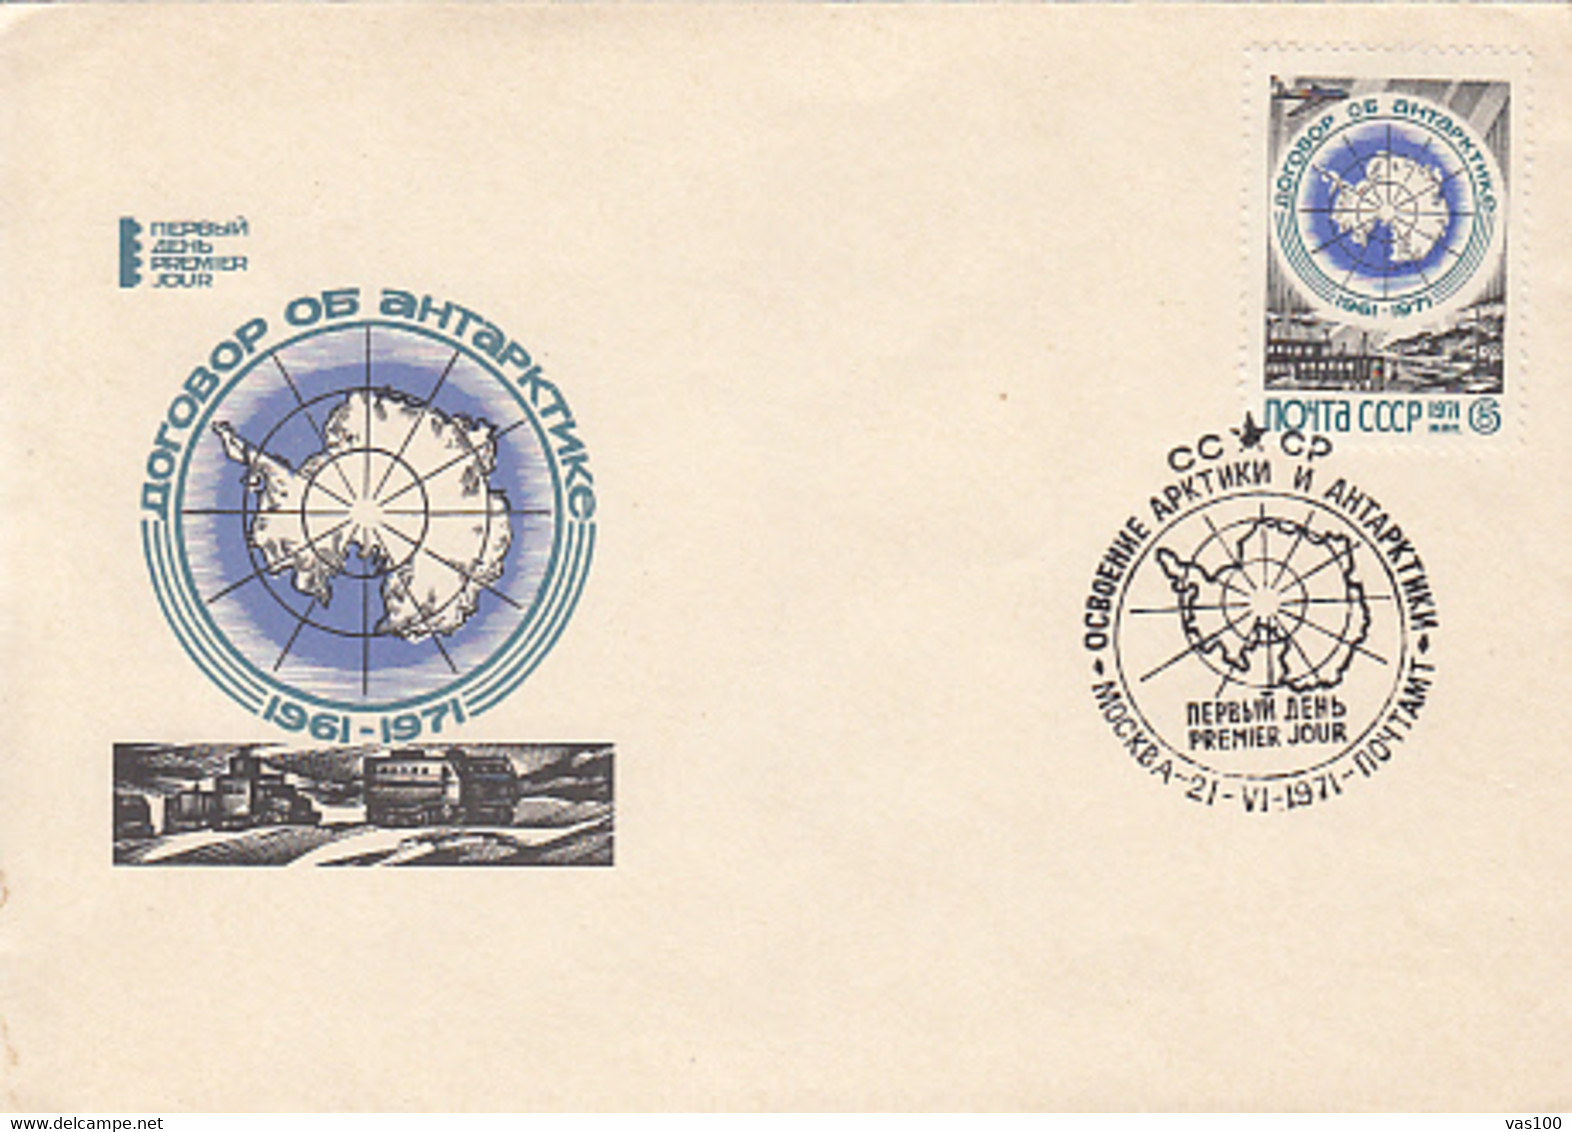 SOUTH POLE, ANTARCTIC TREATY, COVER FDC, 1971, RUSSIA - Antarctic Treaty